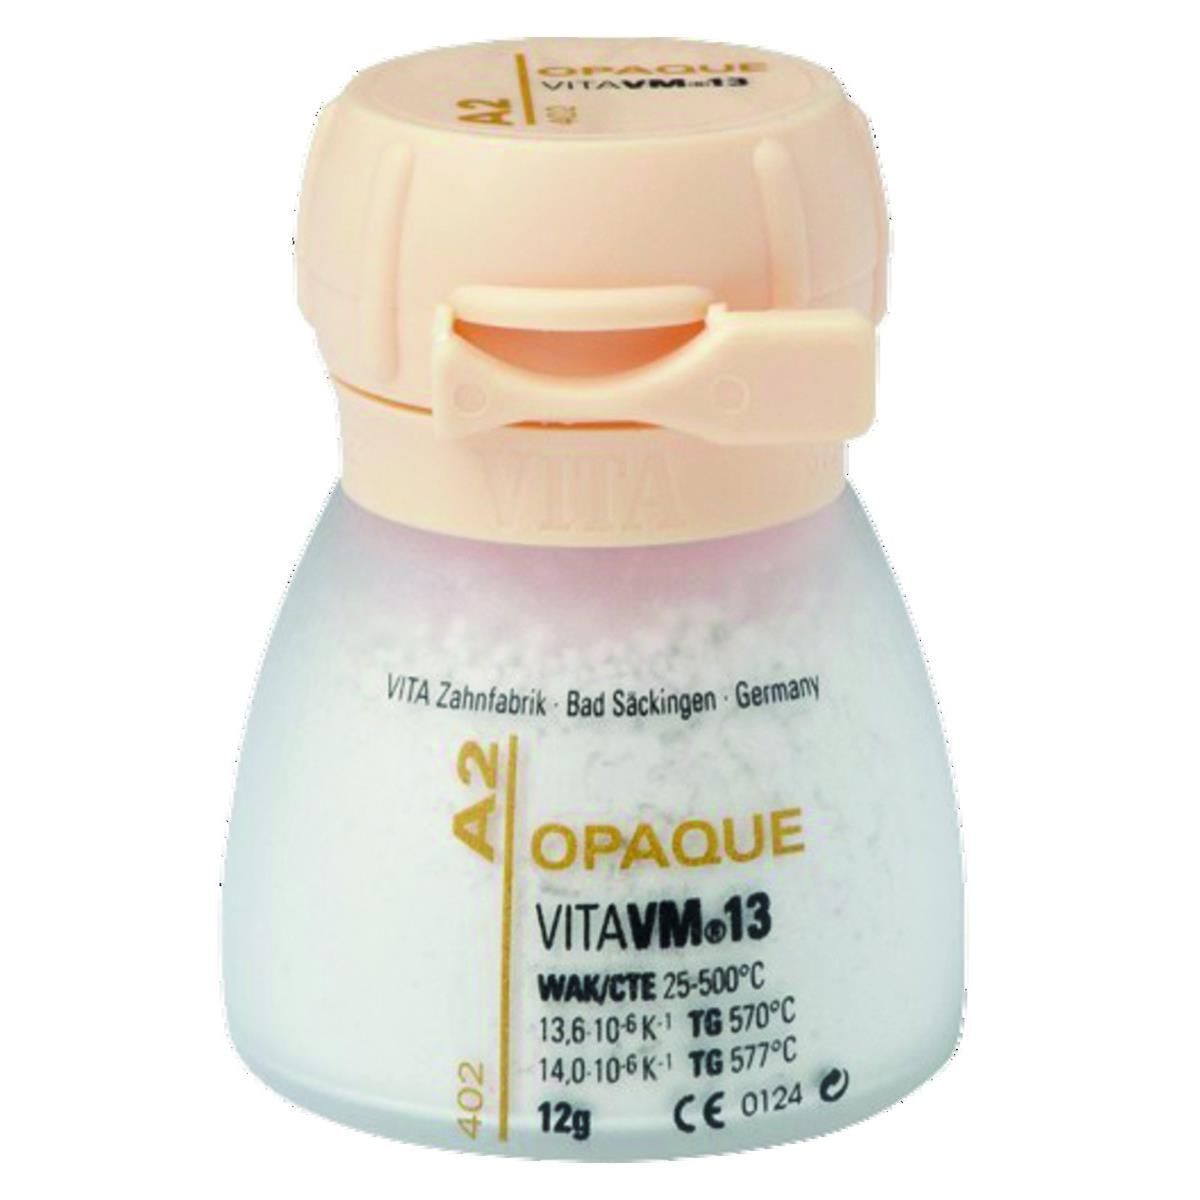 VM13 VITA - Opaque poudre - A1 - Le pot de 12 g